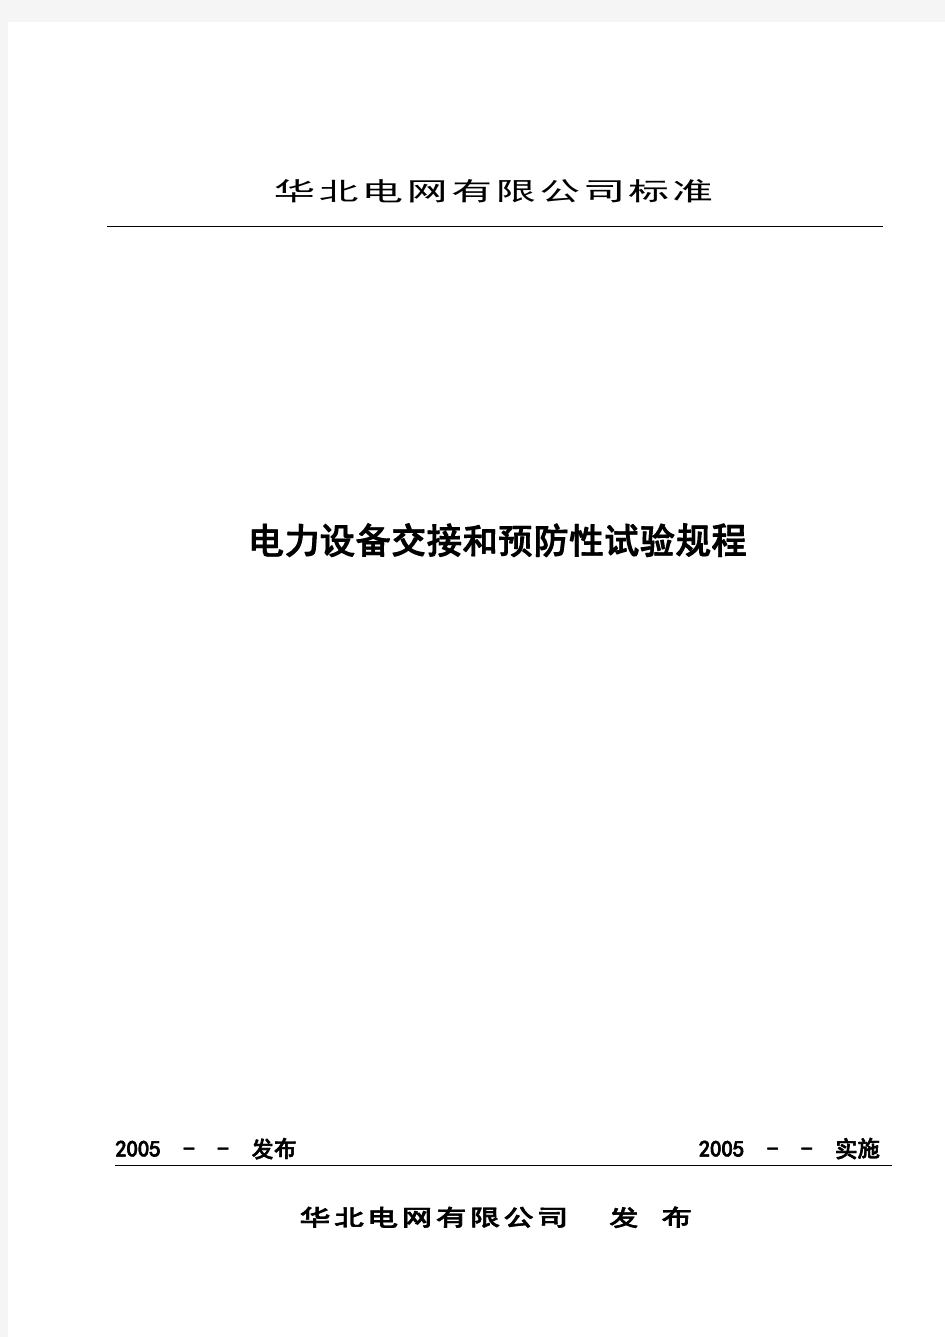 华北电网交接和预试规程